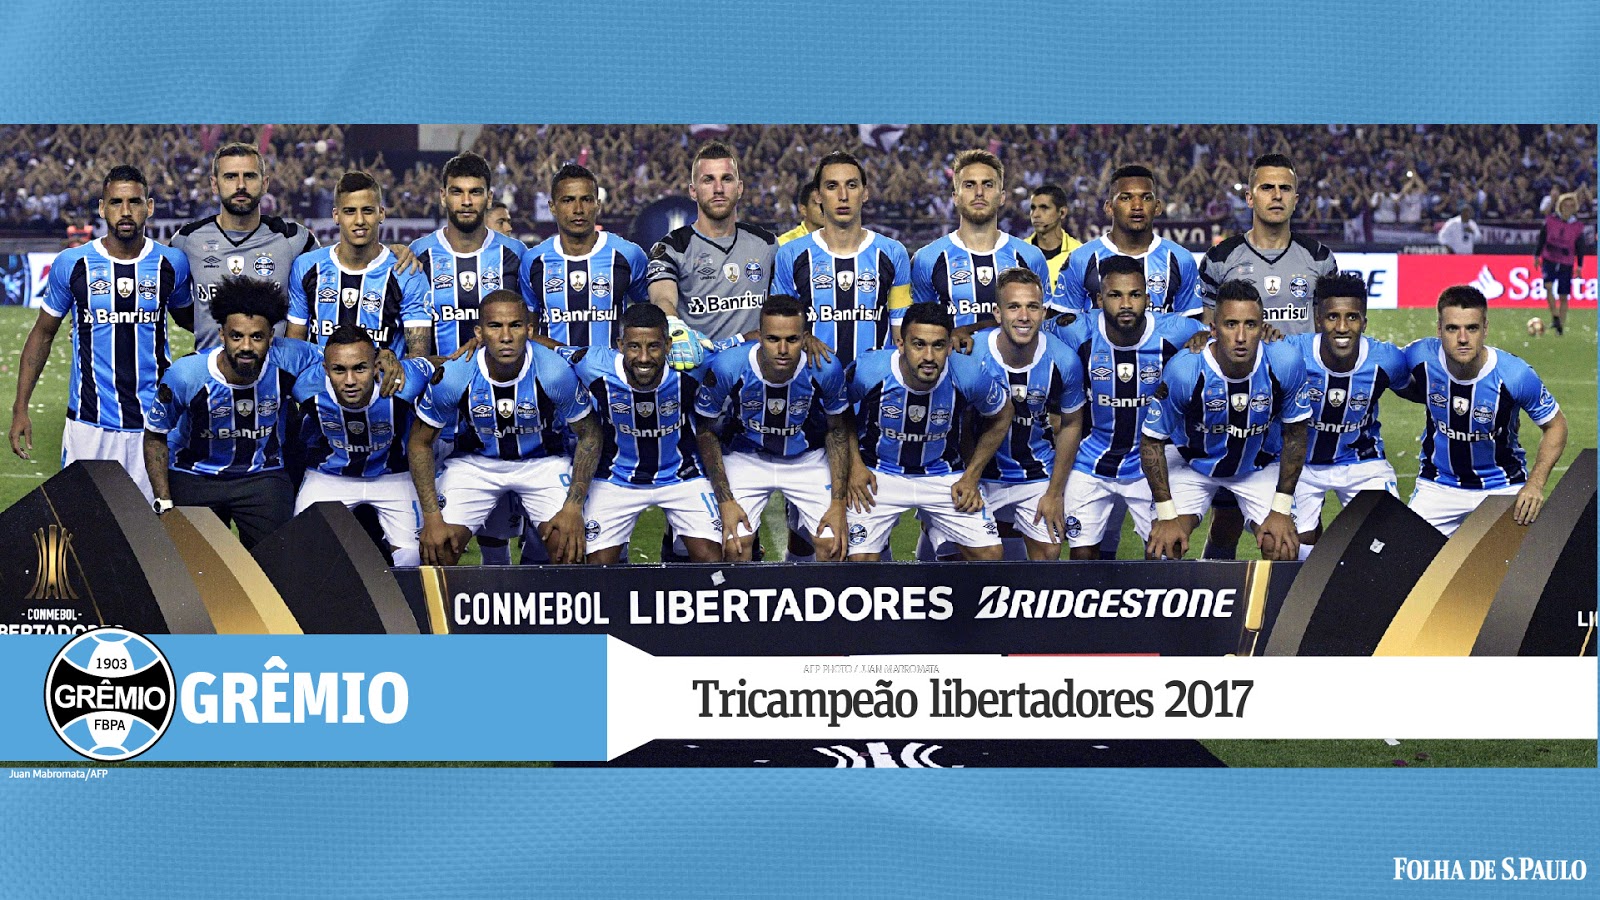 Papel com frase 'Palmeiras não tem mundial' é jogado de Edifício Lugano,  onde o tricolor Temer está reunido